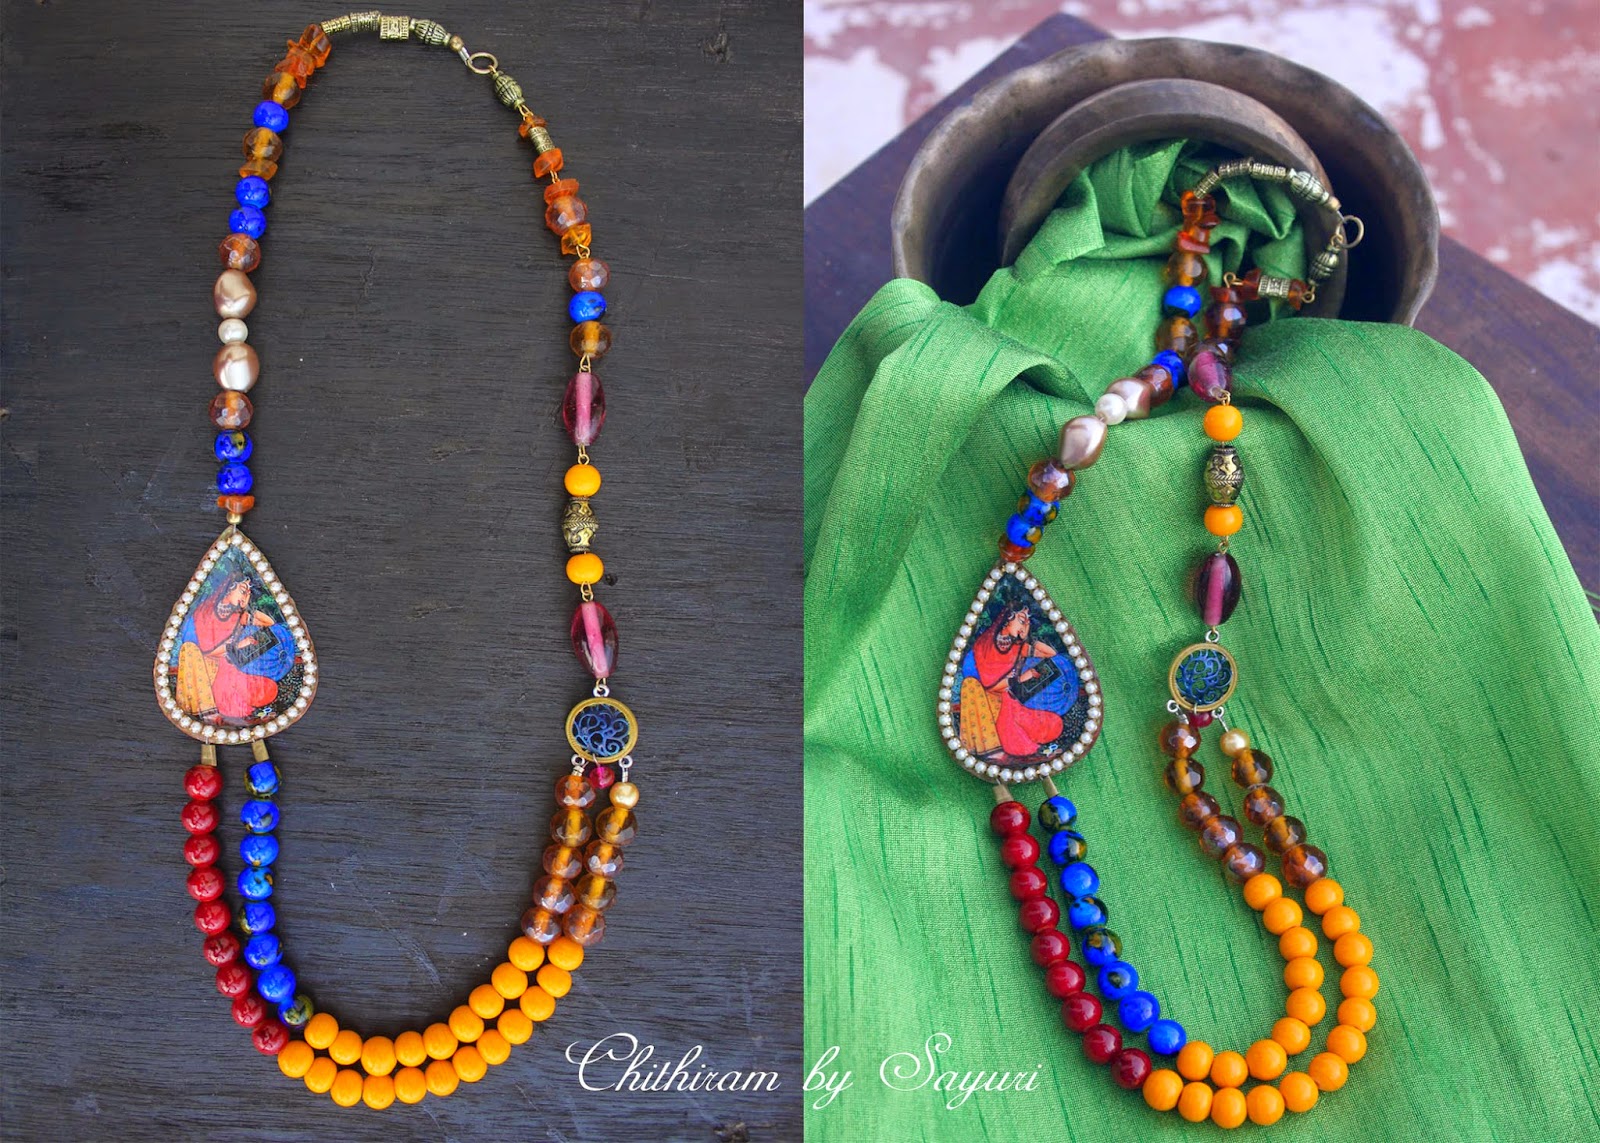 Dhanasri ragini necklace